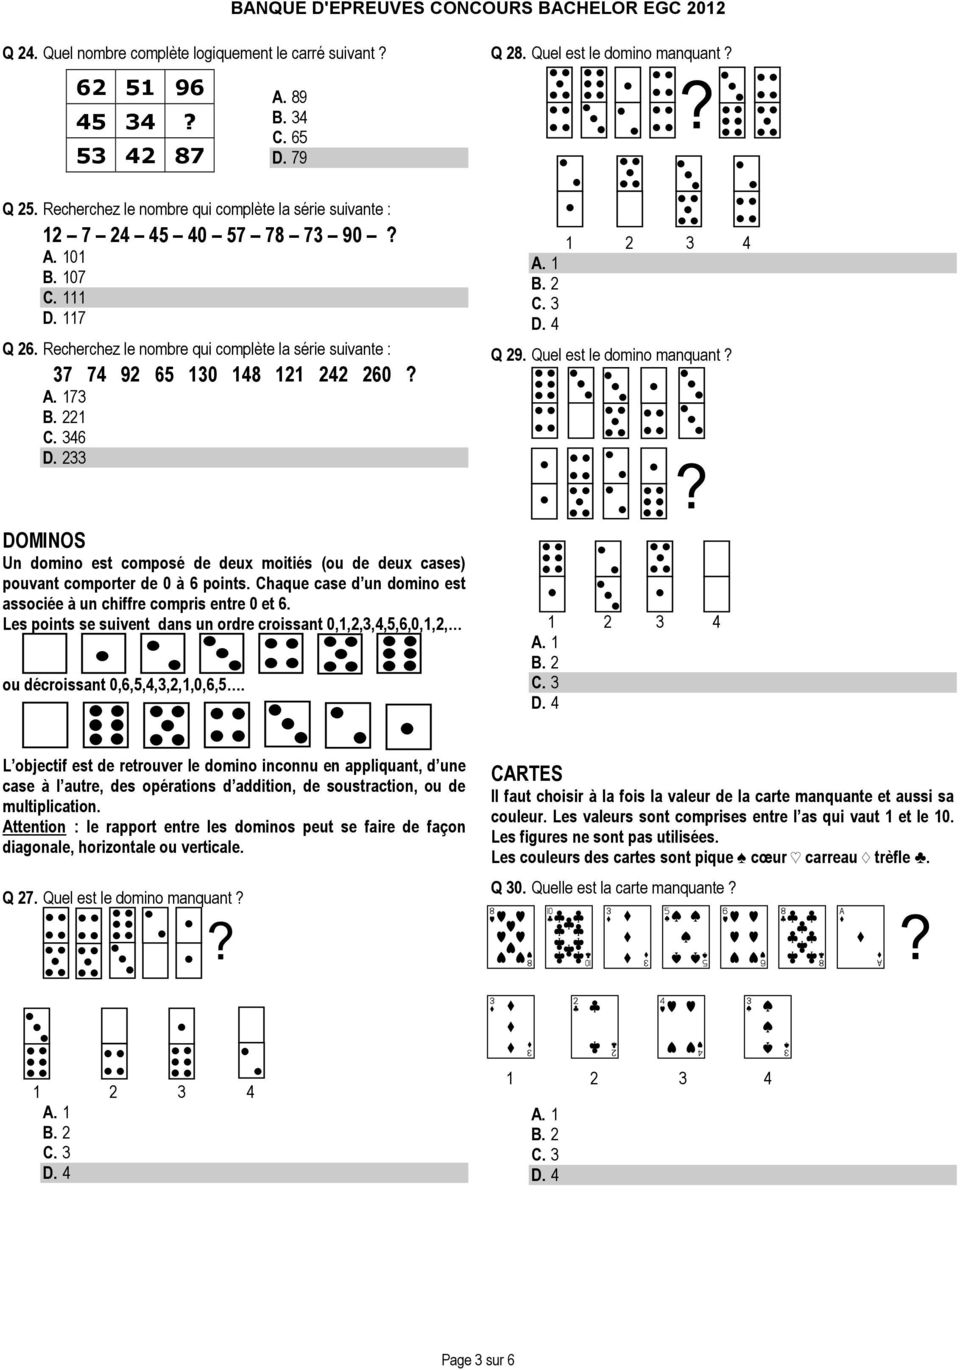 Q 29. Quel est le domino manquant? DOMINOS Un domino est composé de deux moitiés (ou de deux cases) pouvant comporter de 0 à 6 points.